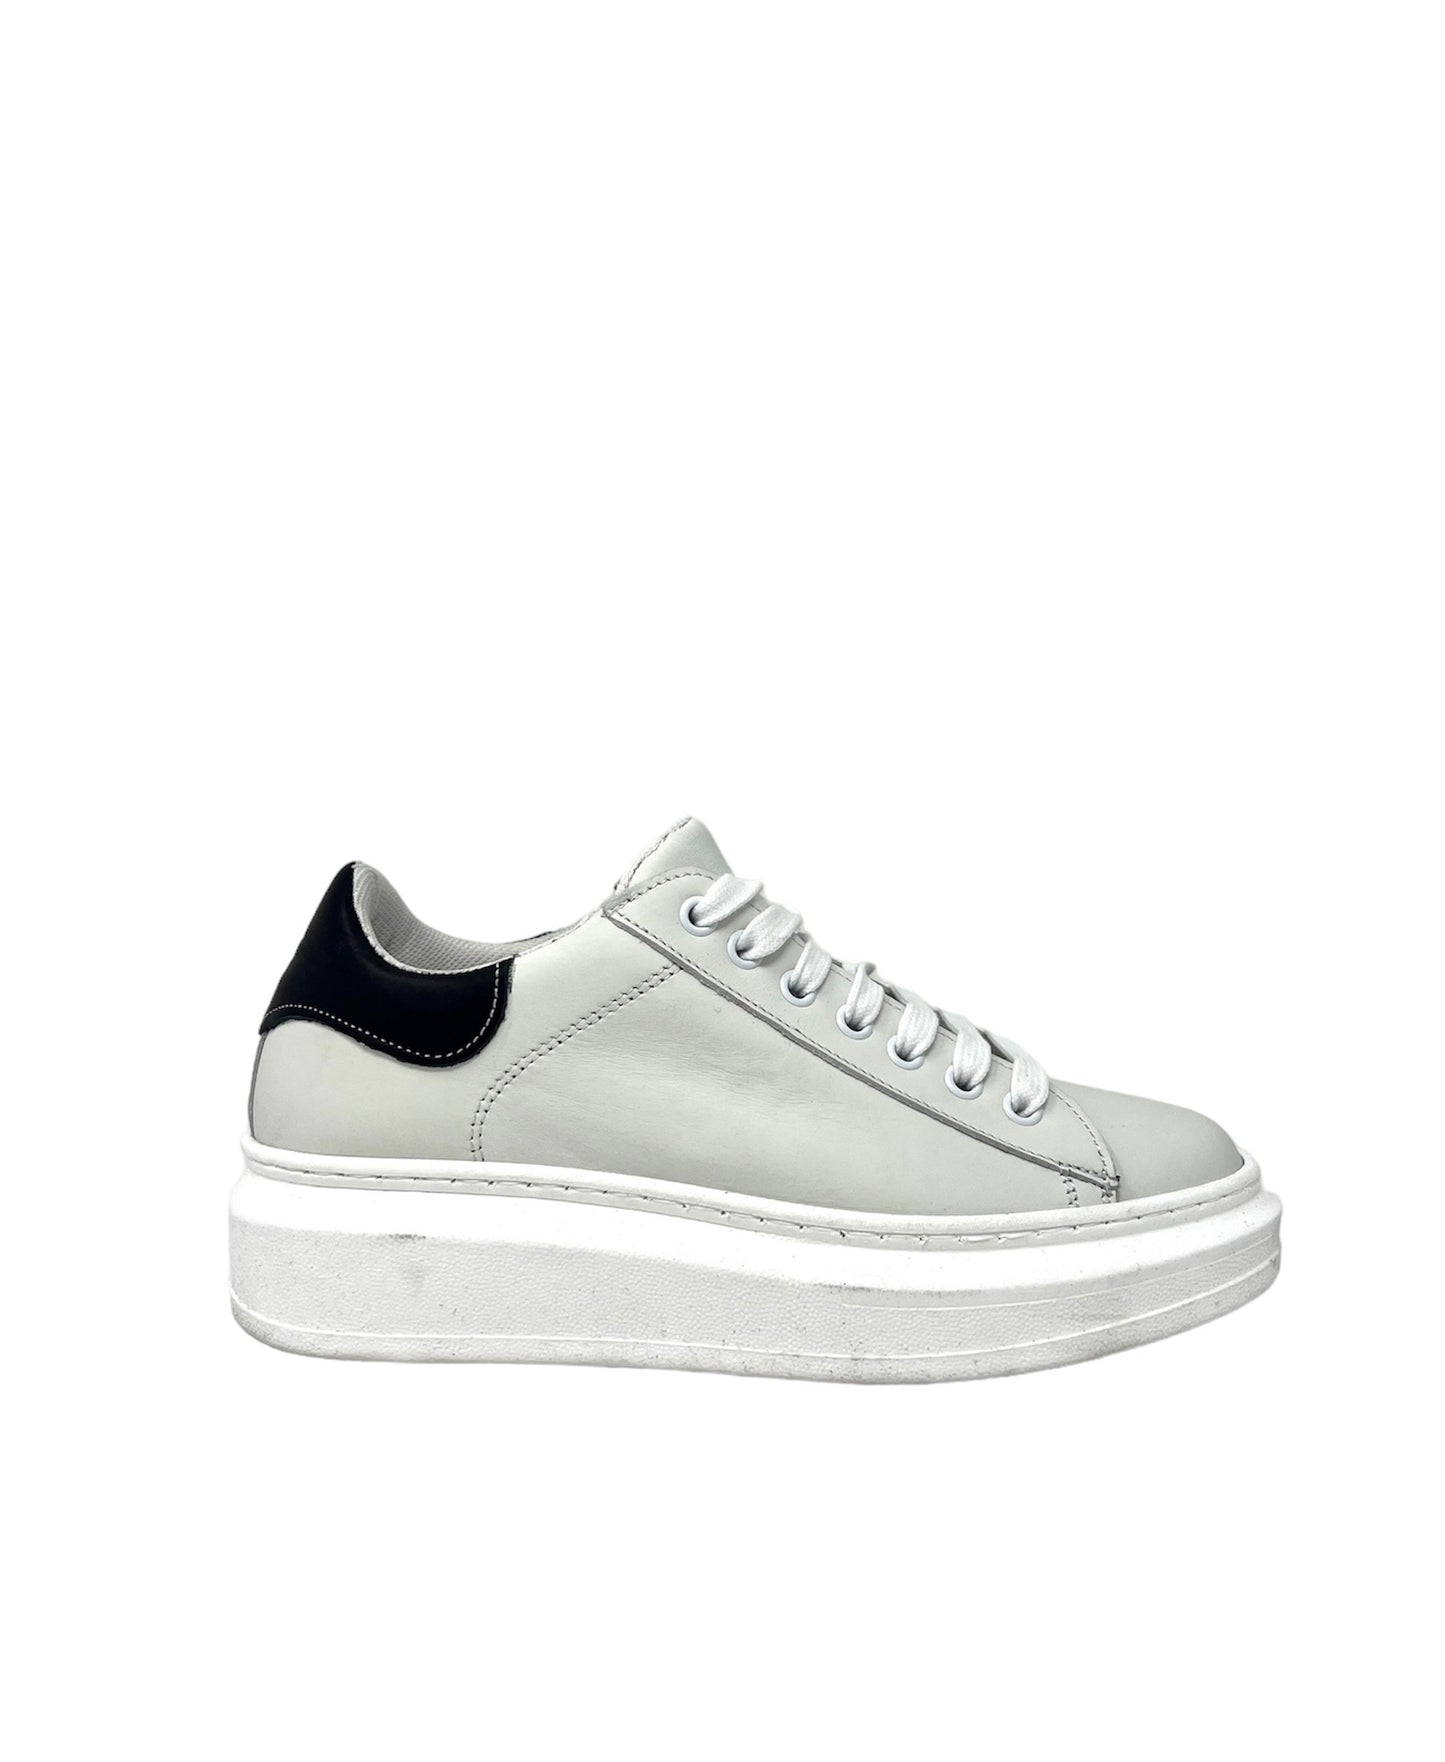 Sneakers in pelle bianca tallonetta nera - KEVIN01